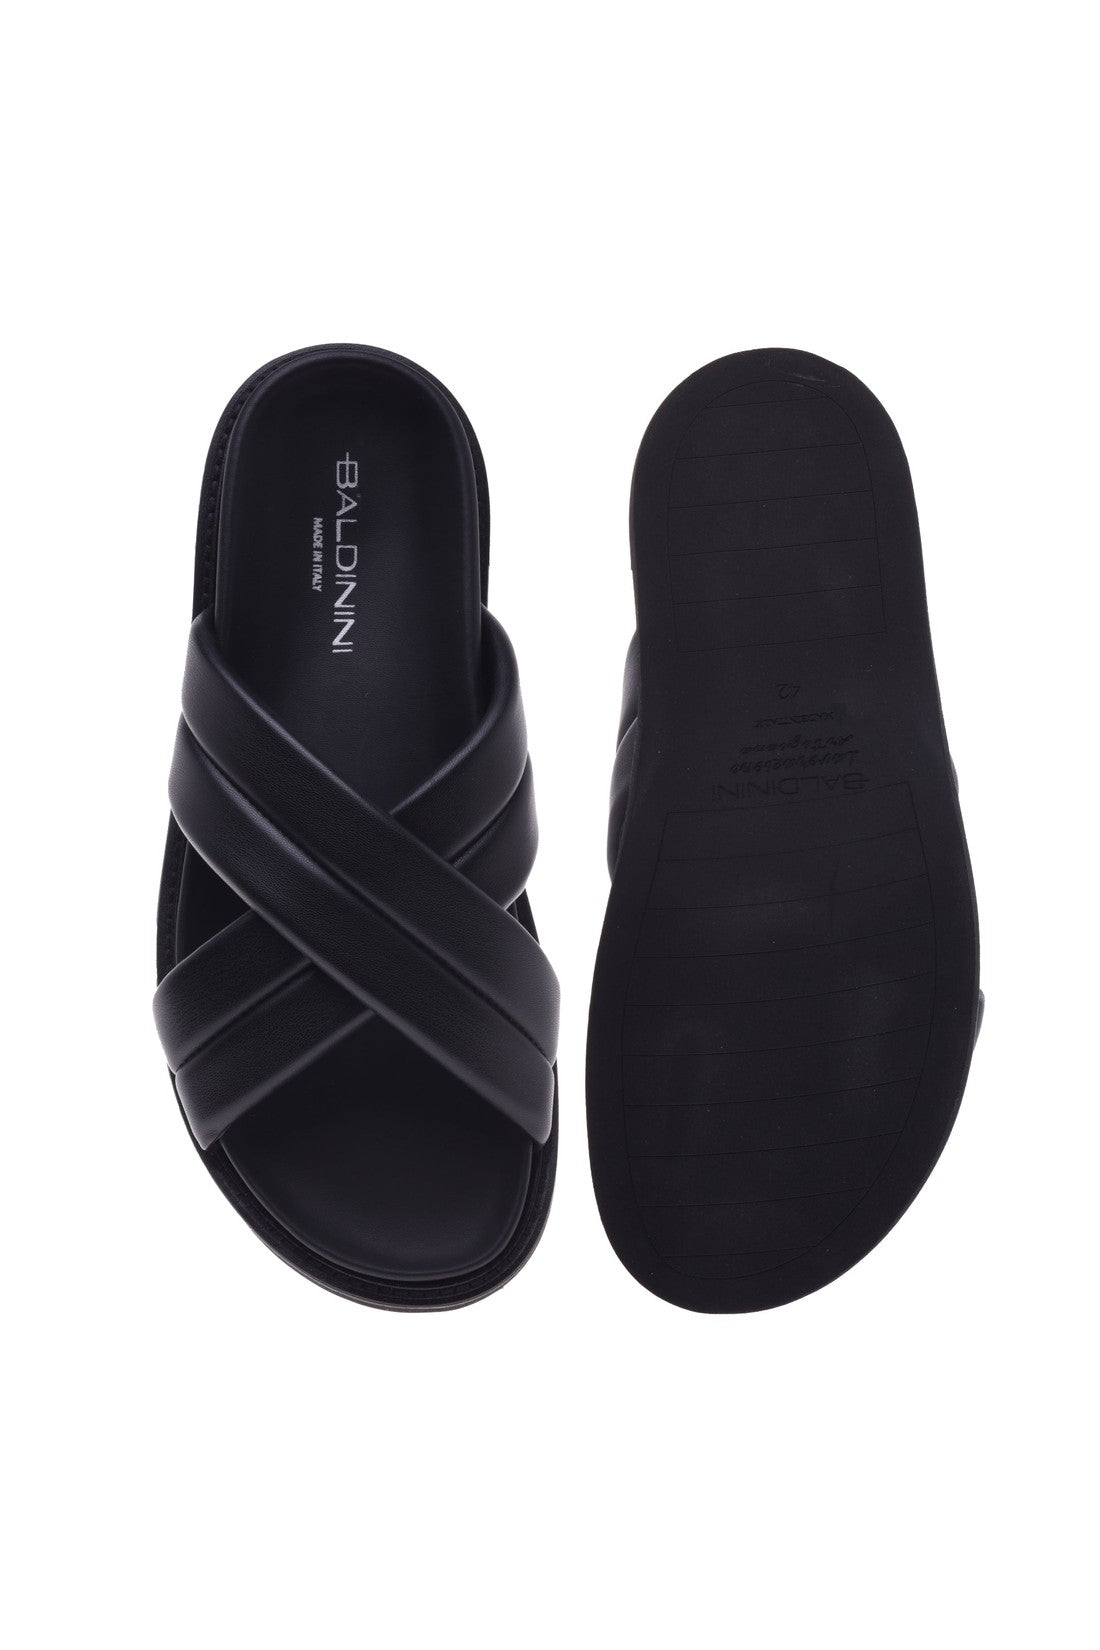 Sandal in black nappa leather